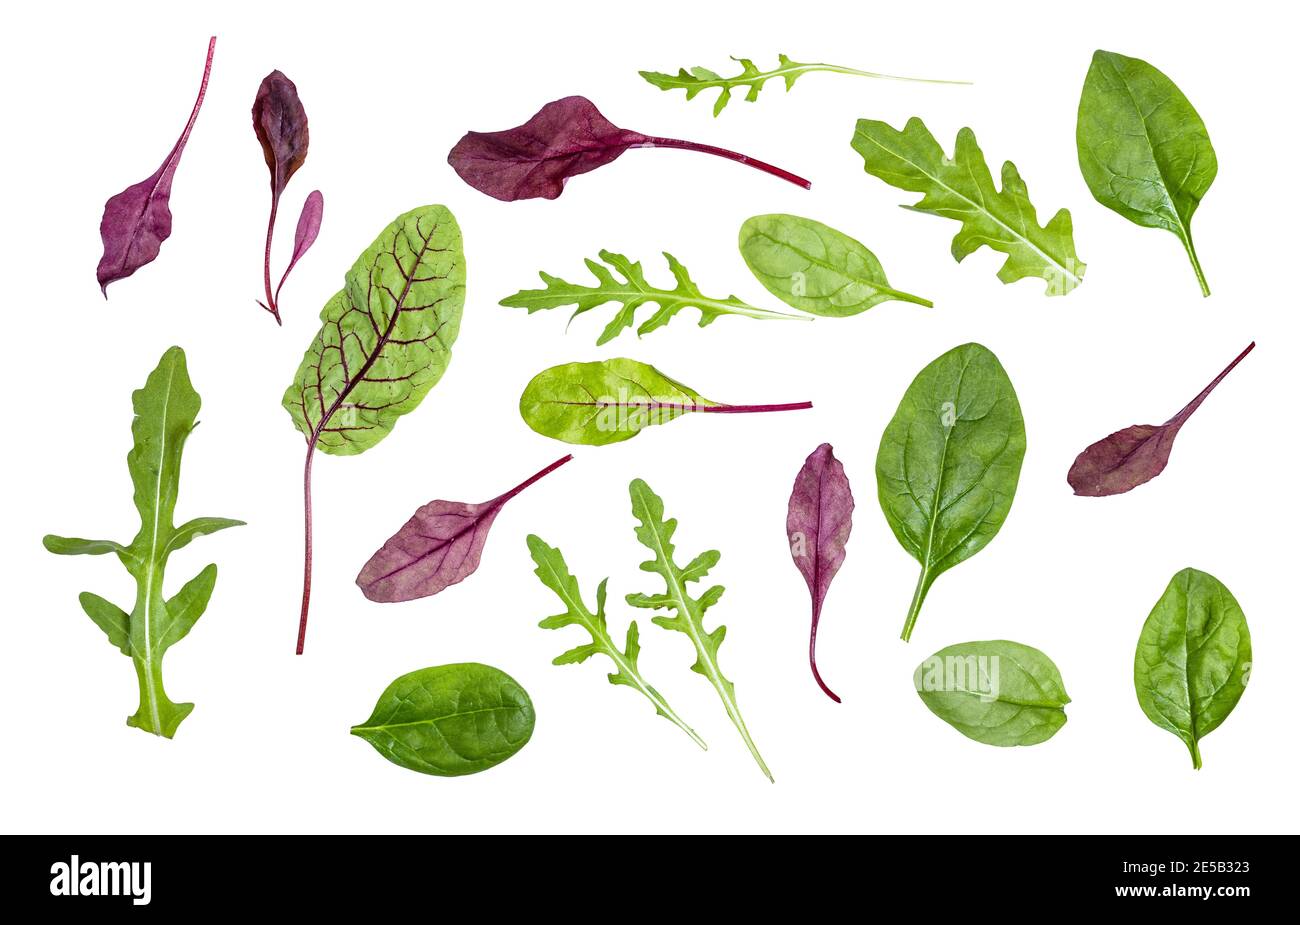 de nombreuses feuilles fraîches de divers légumes à feuilles (verger, épinards, arugula) isolées sur fond blanc Banque D'Images